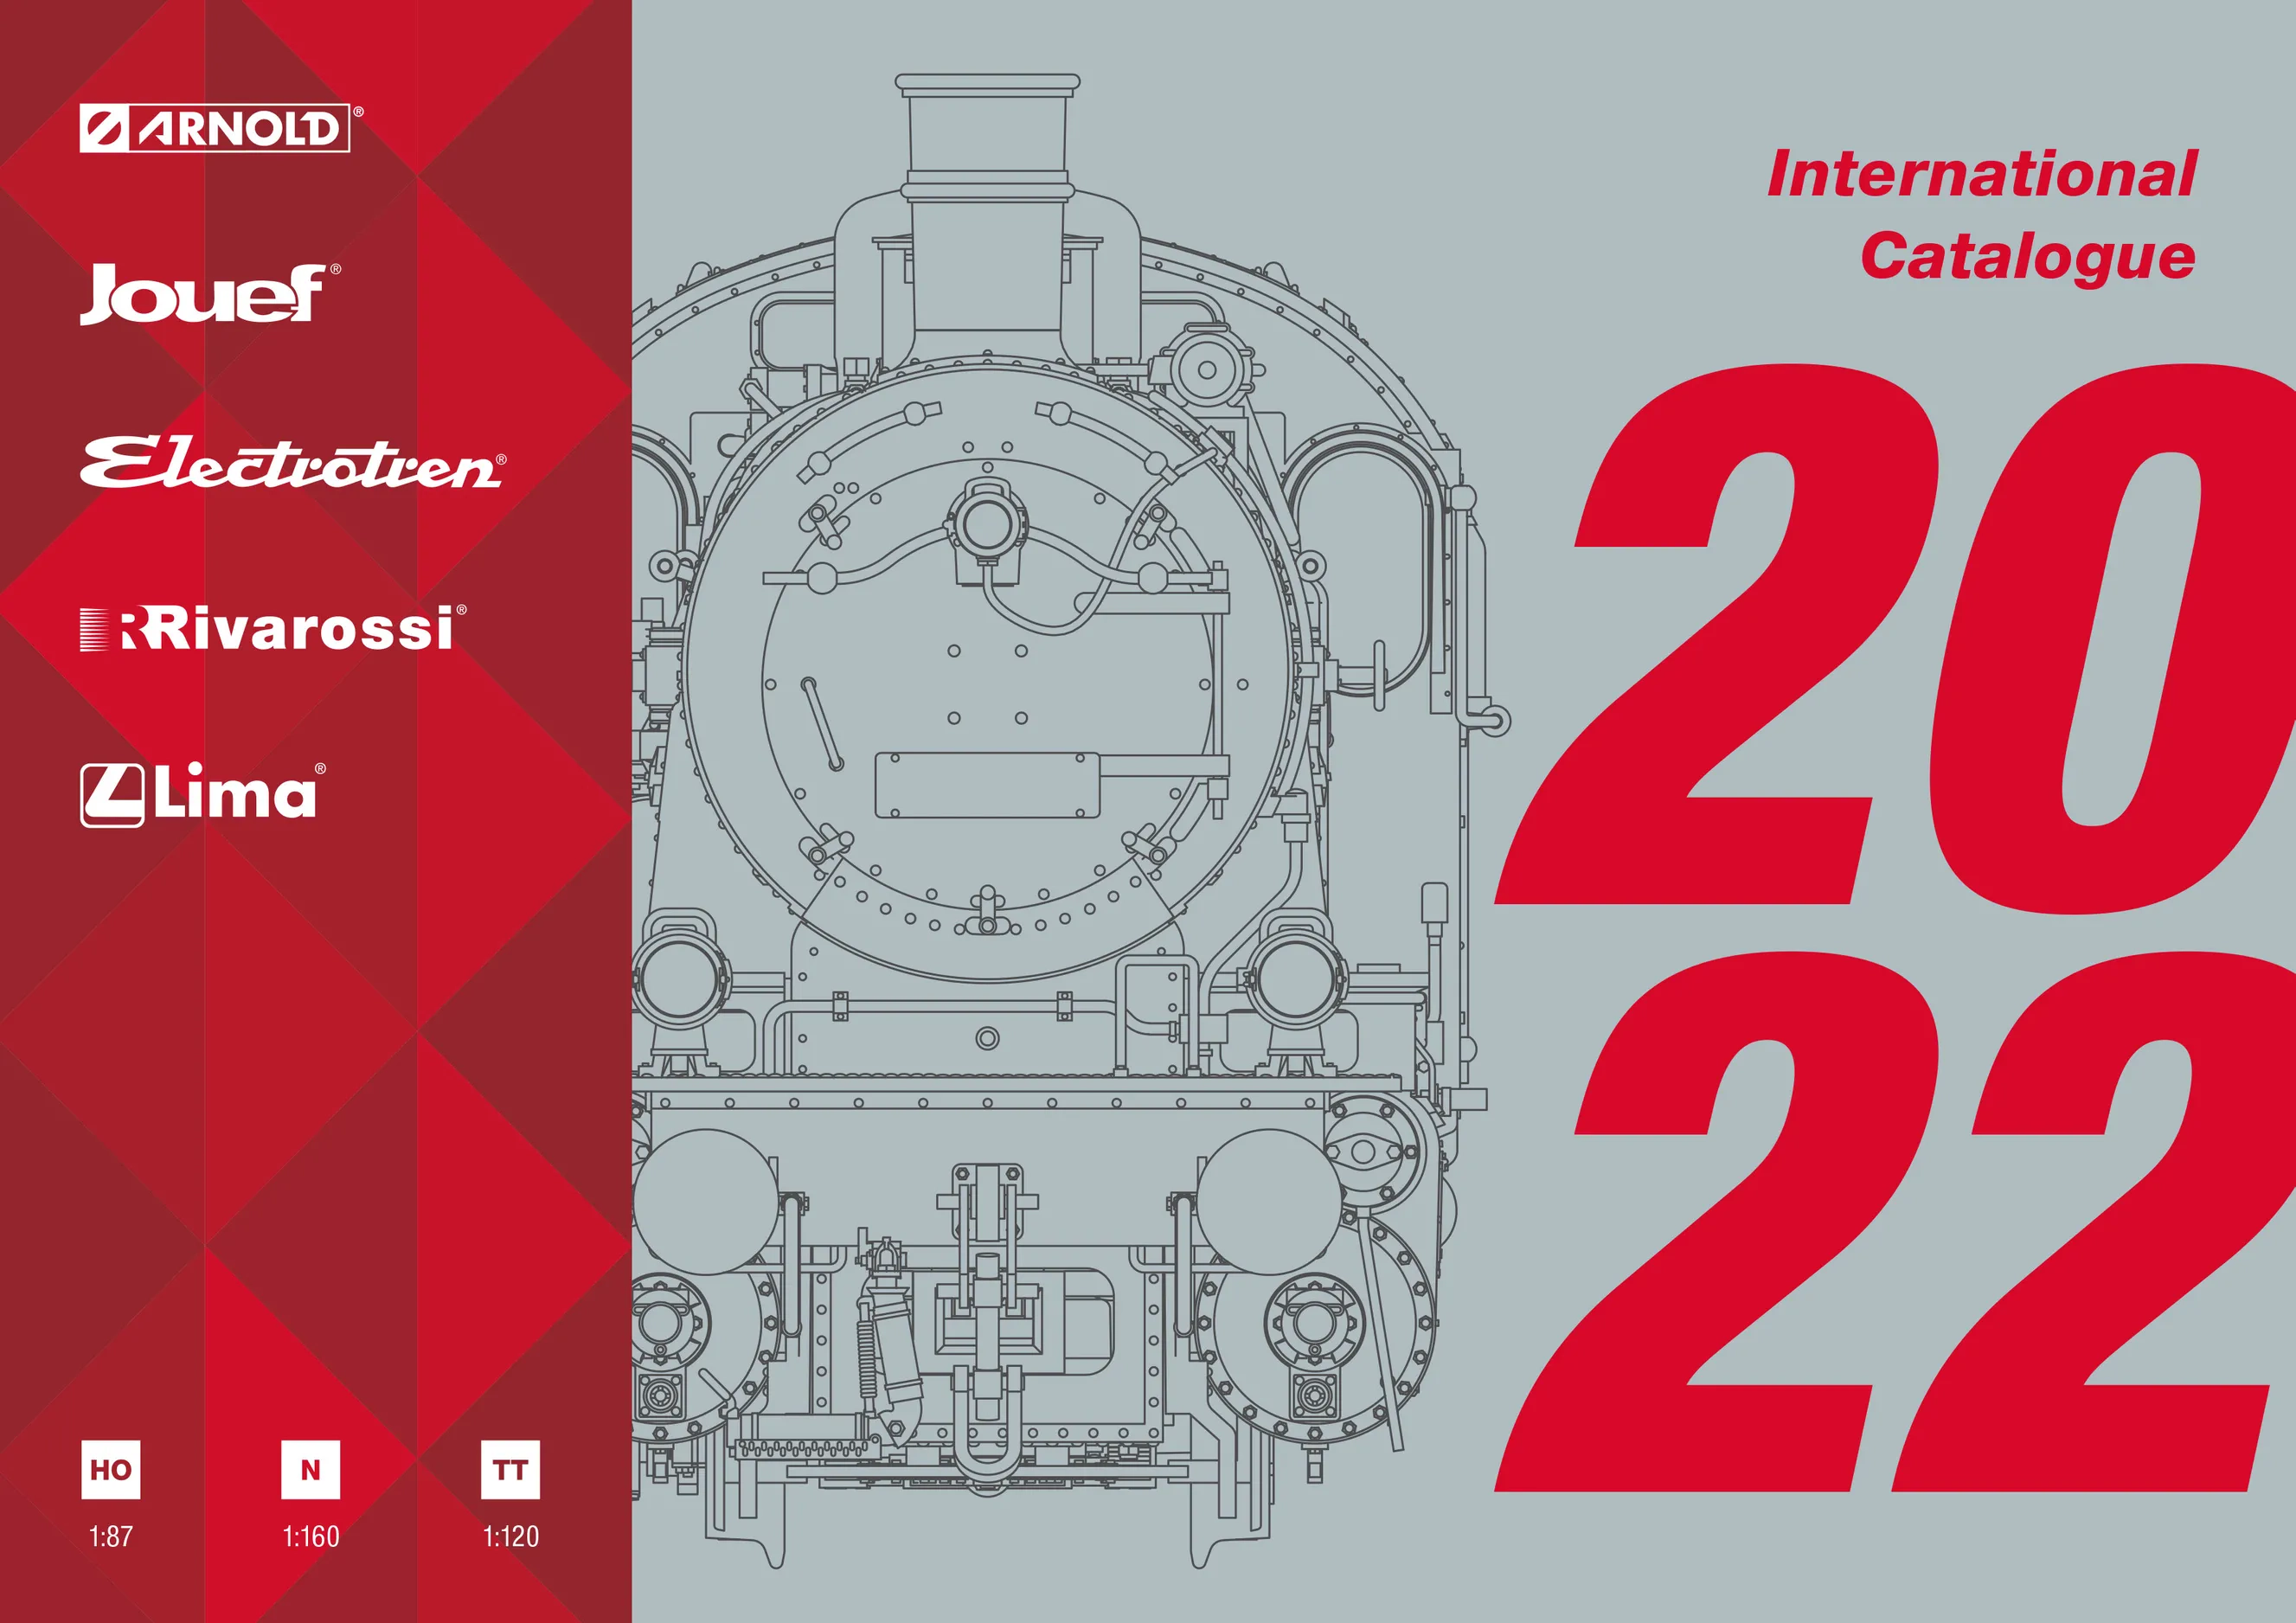 Hornby International Catalogue 2022